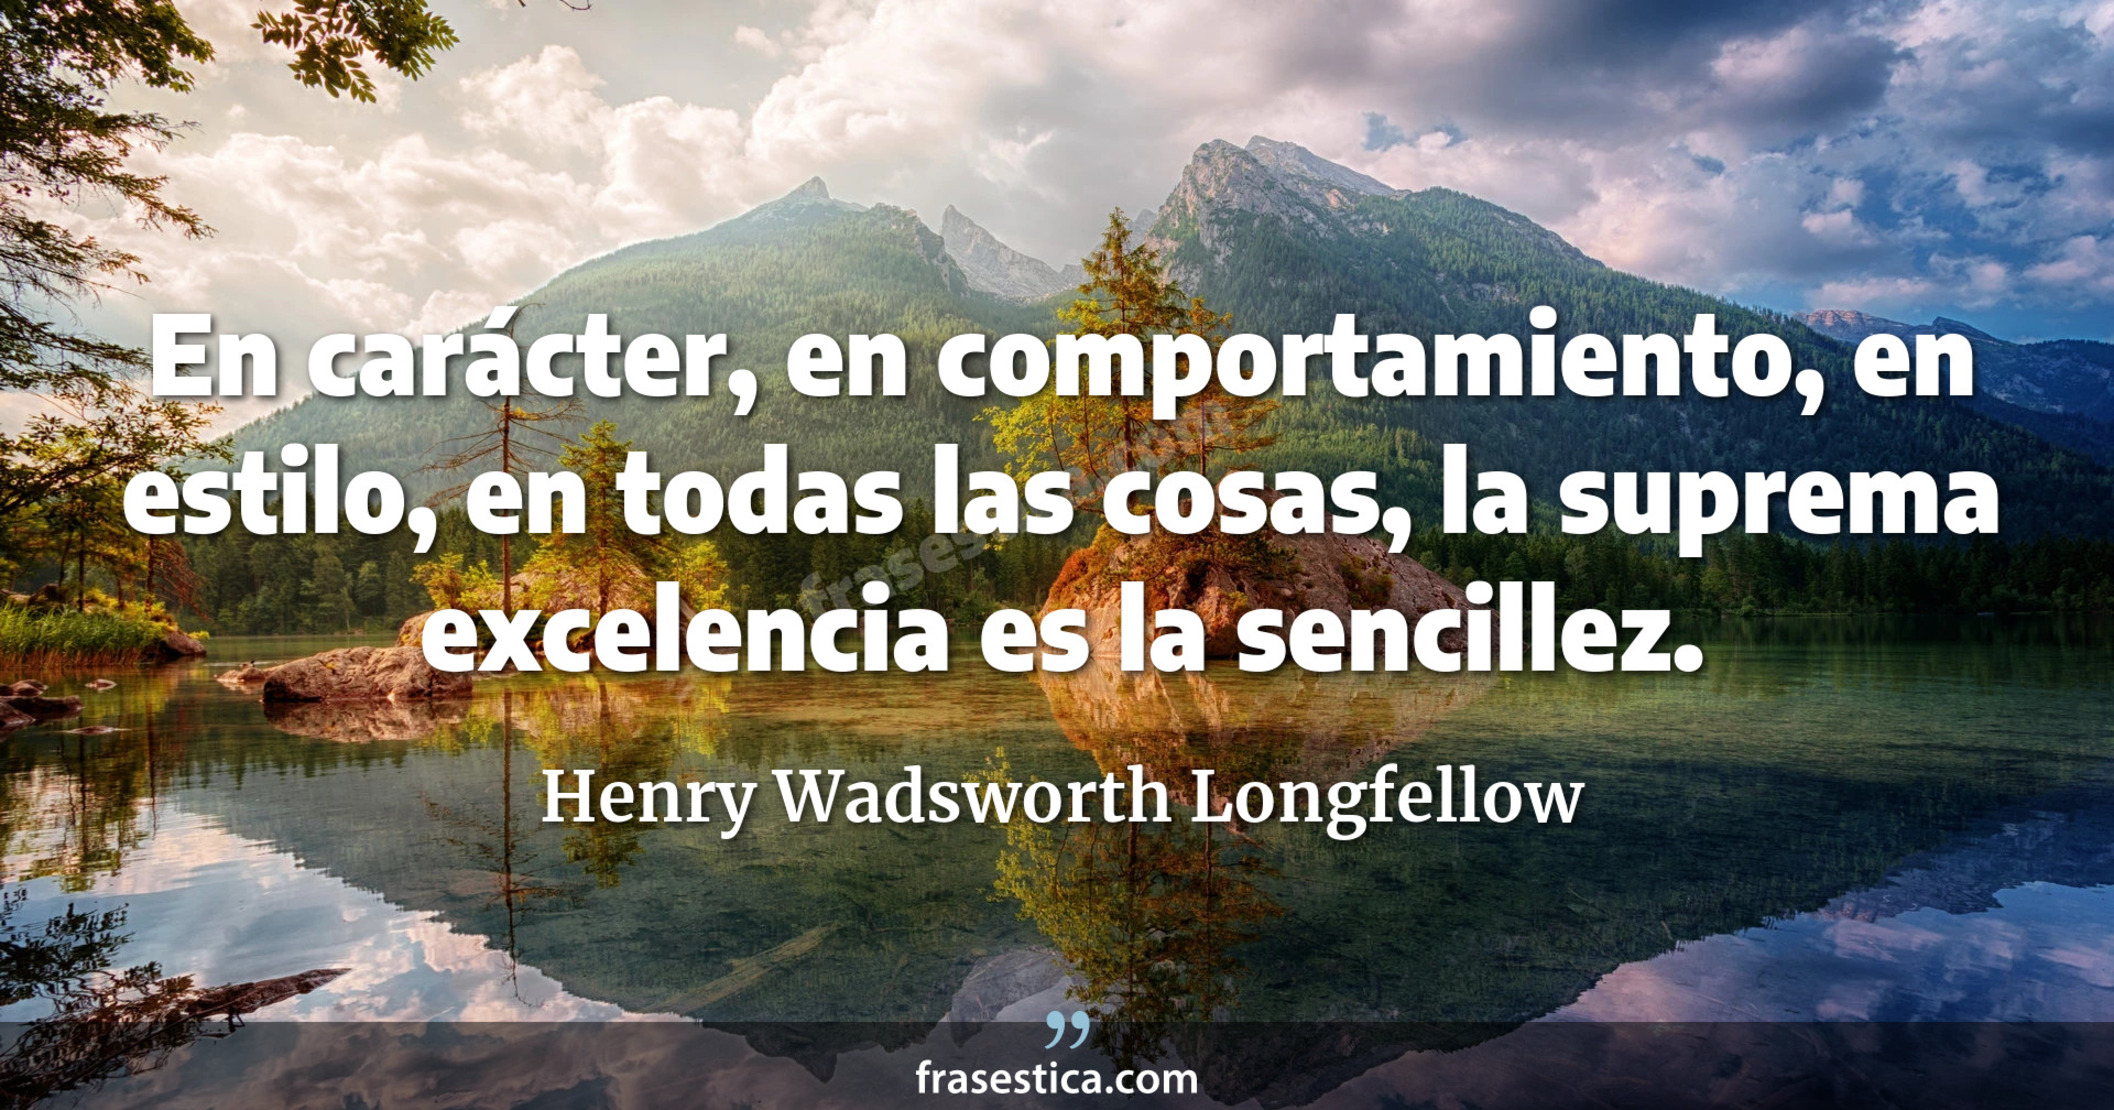 En carácter, en comportamiento, en estilo, en todas las cosas, la suprema excelencia es la sencillez. - Henry Wadsworth Longfellow